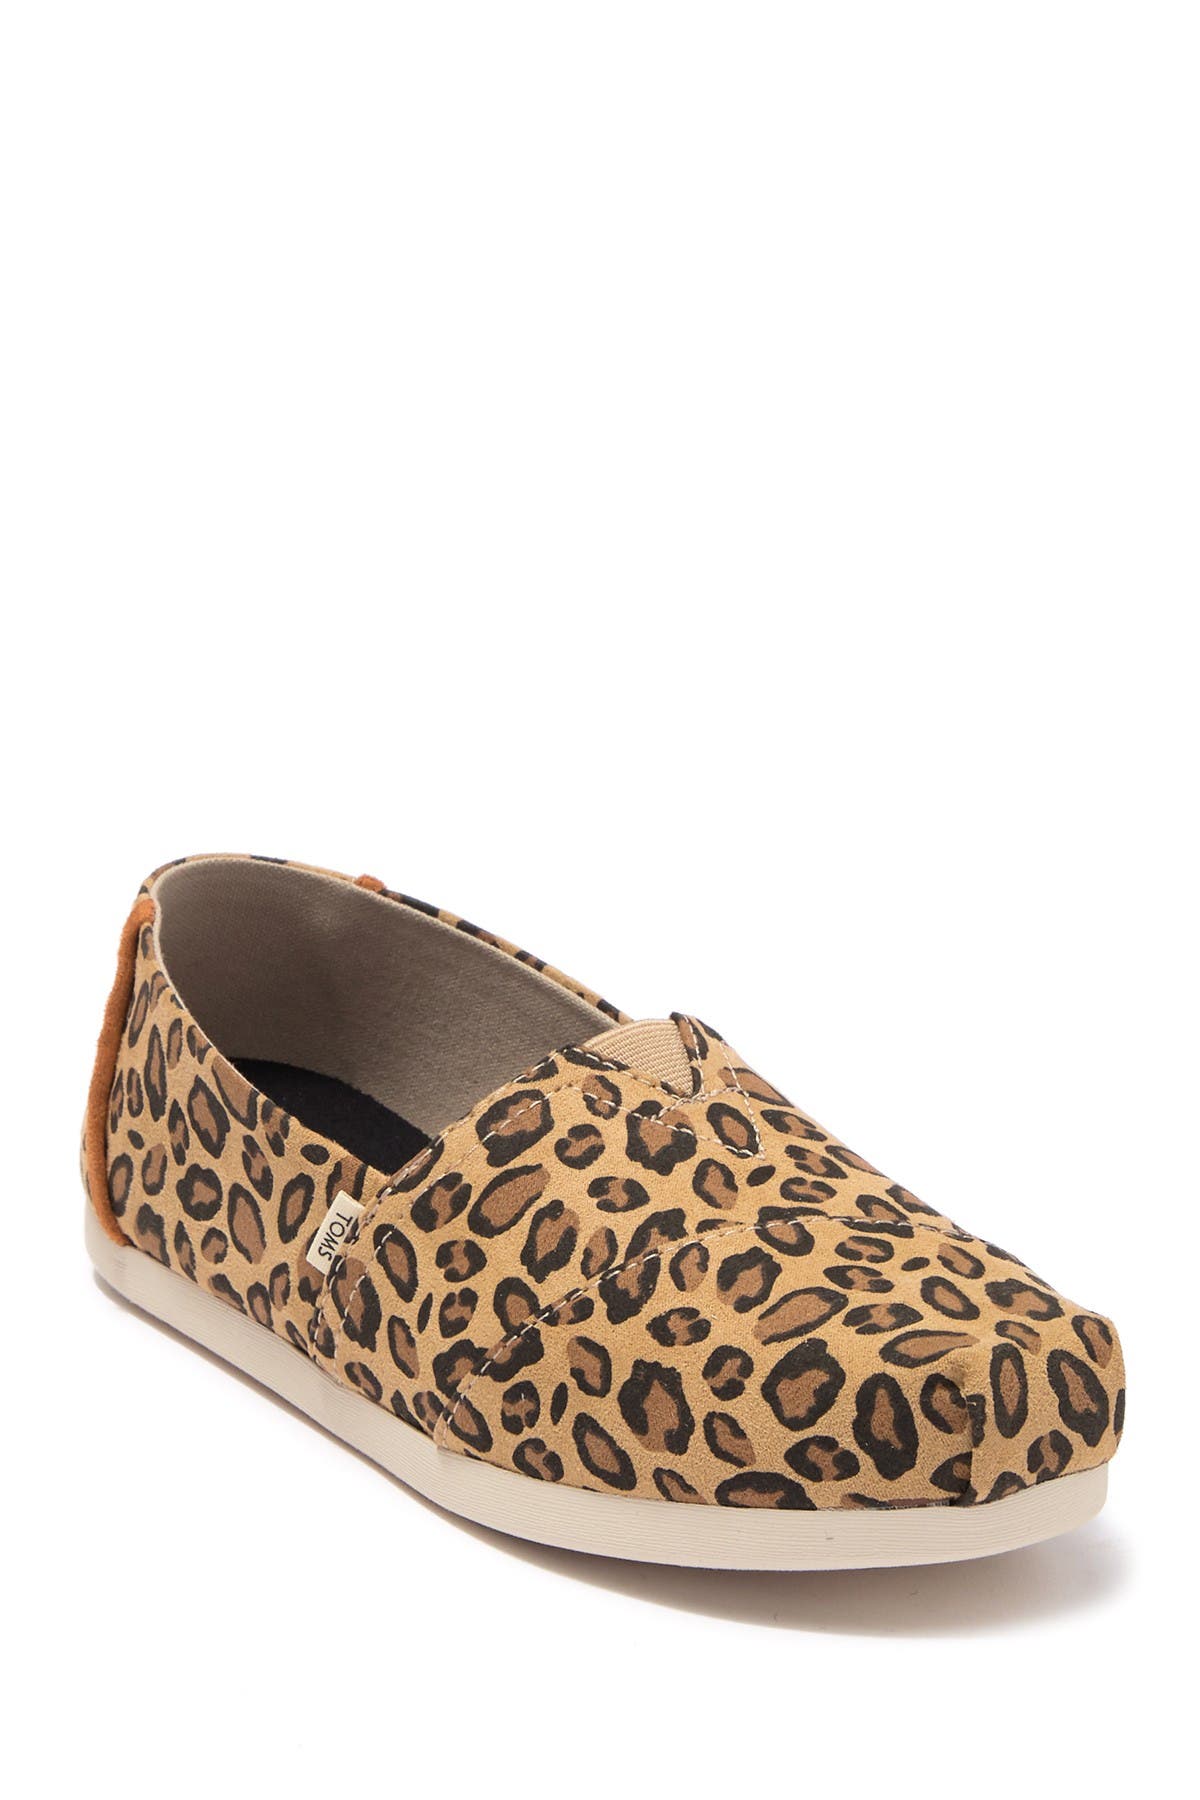 leopard print toms shoes